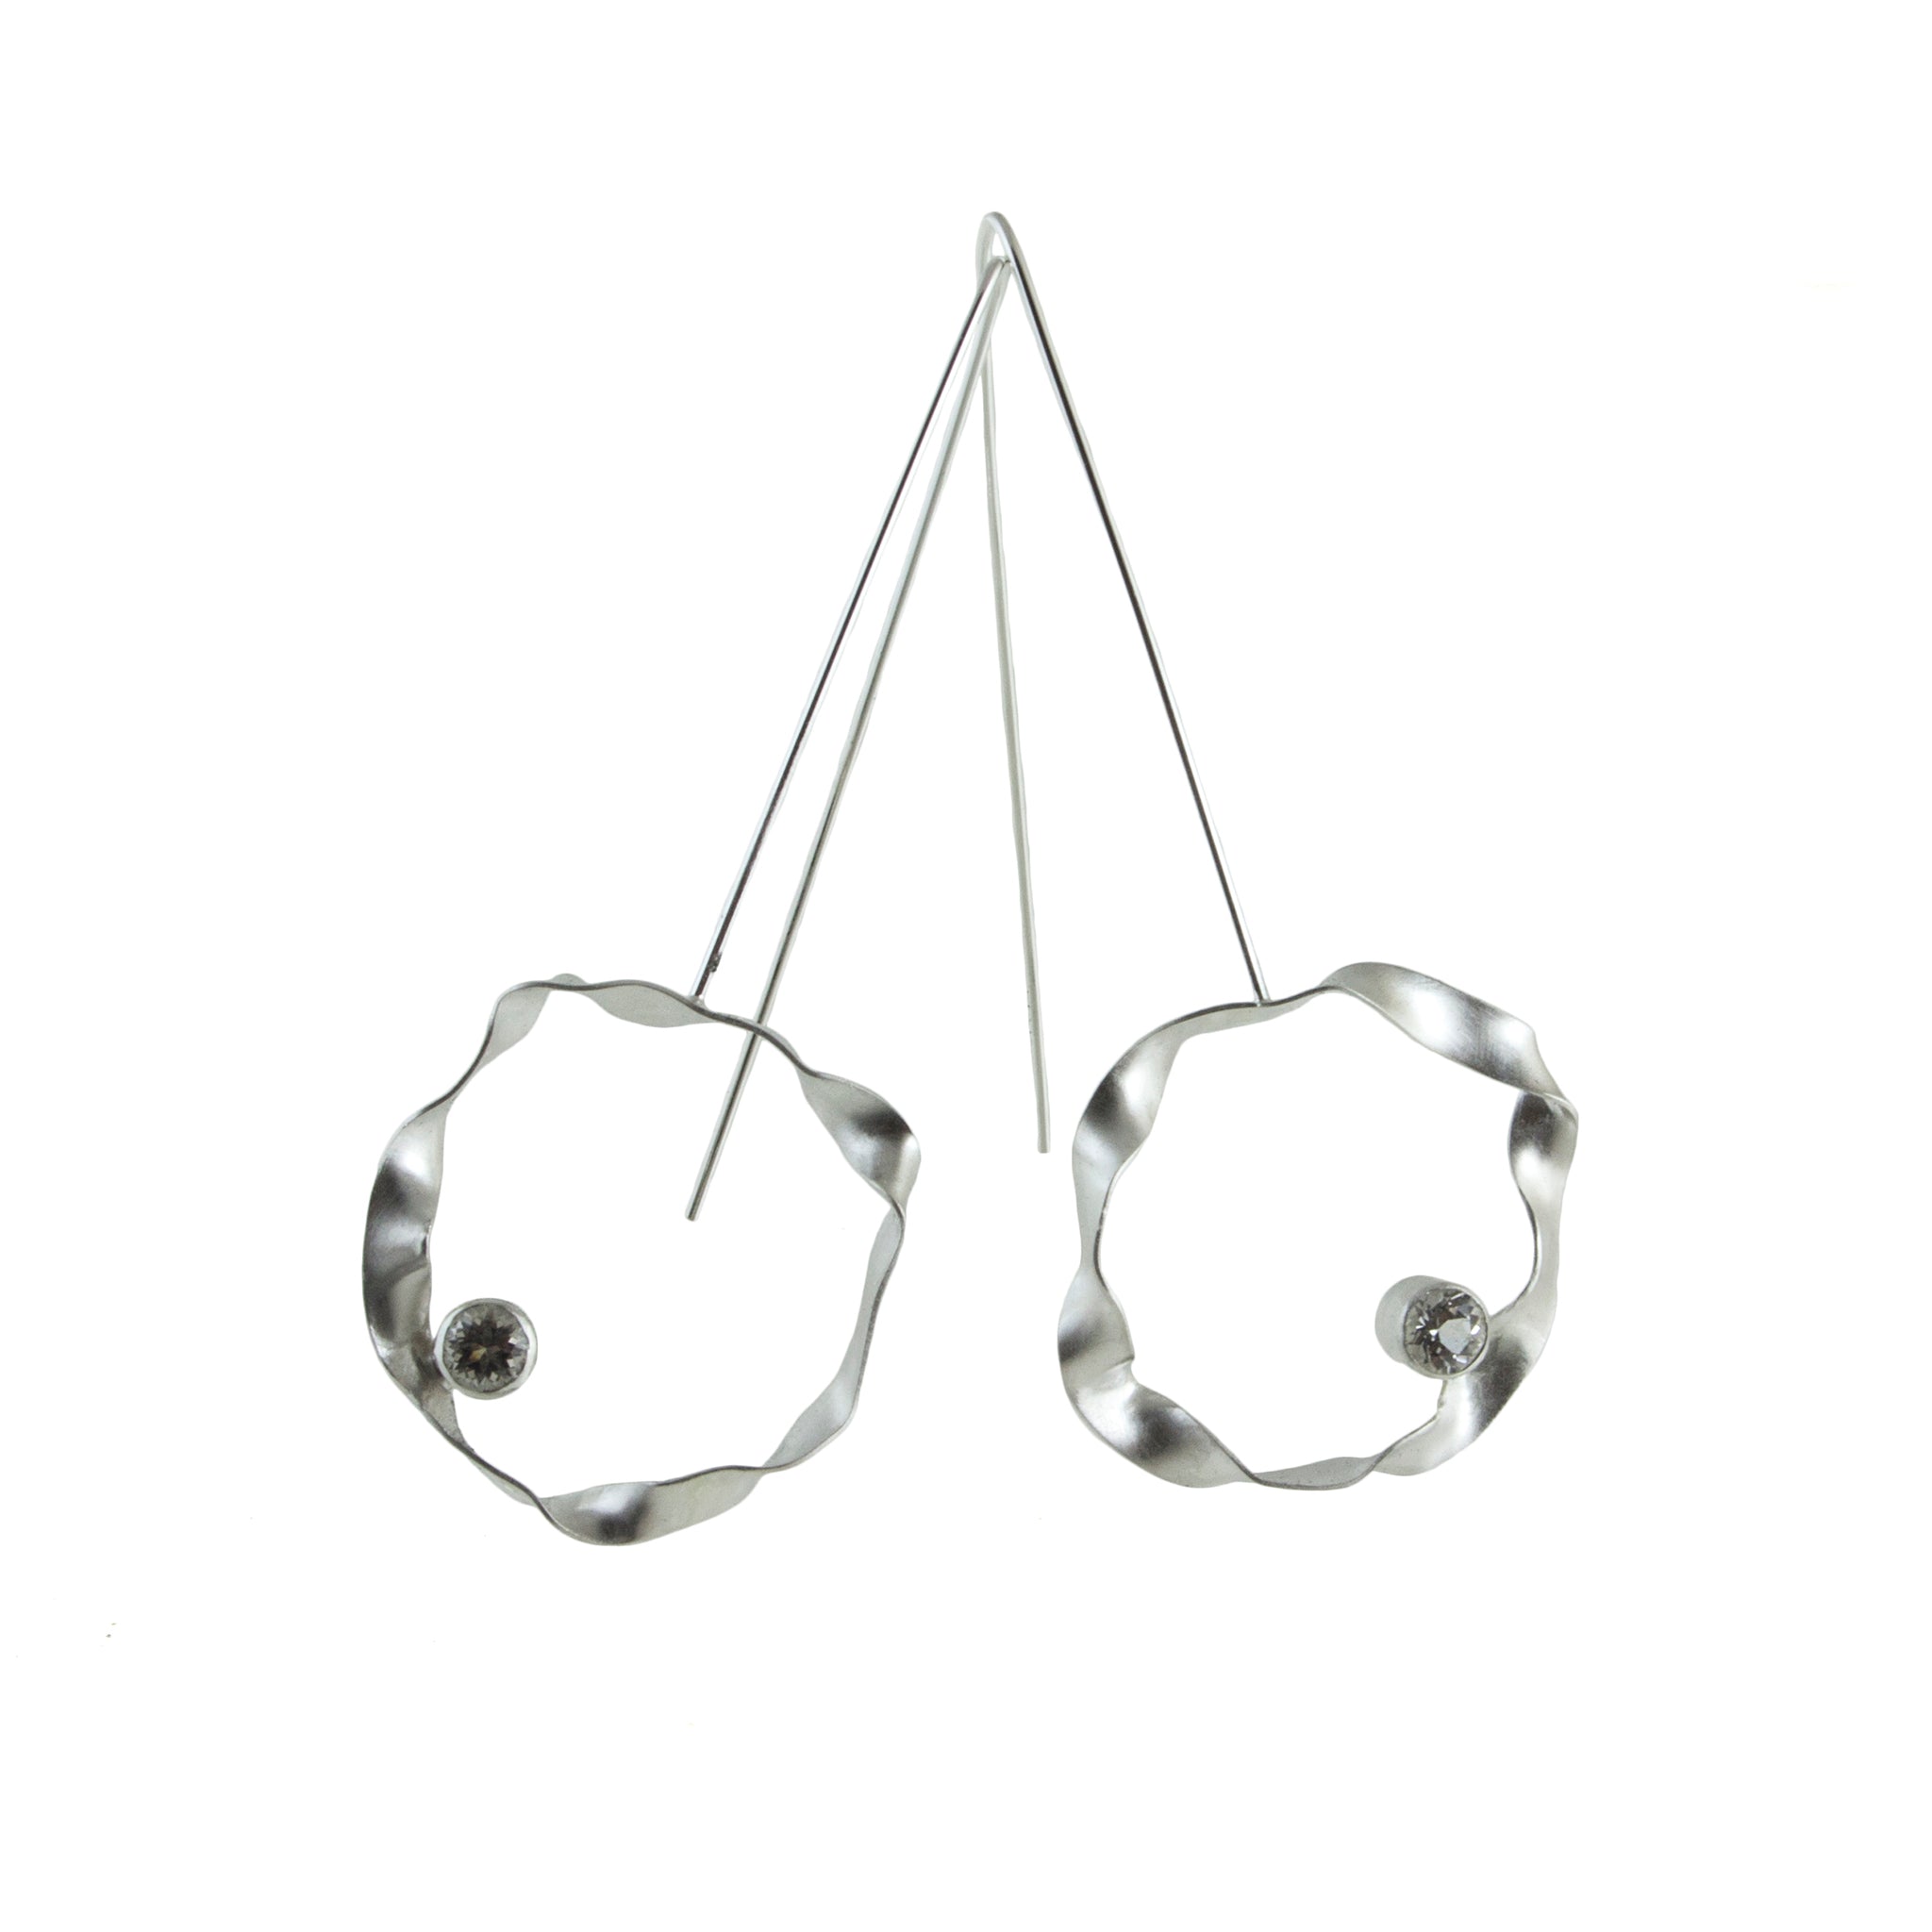 sterling silver hoop earrings with gemstones by eko jewelry design, Solange